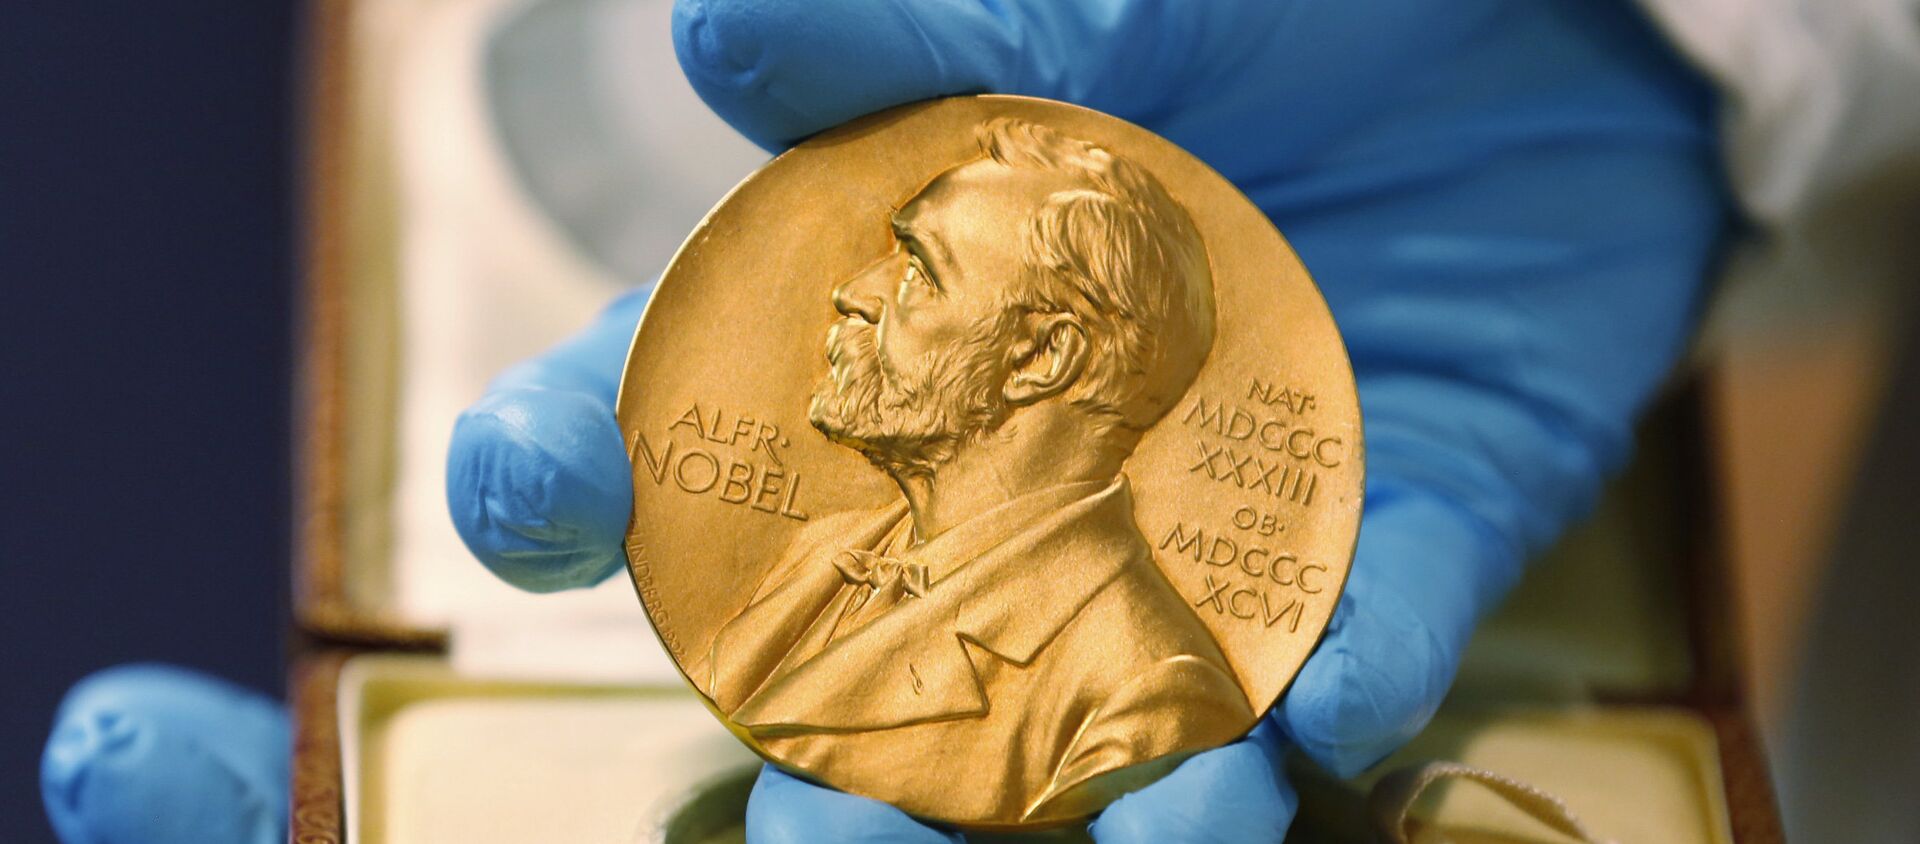 Nobel Prize medal - Sputnik Mundo, 1920, 06.10.2020